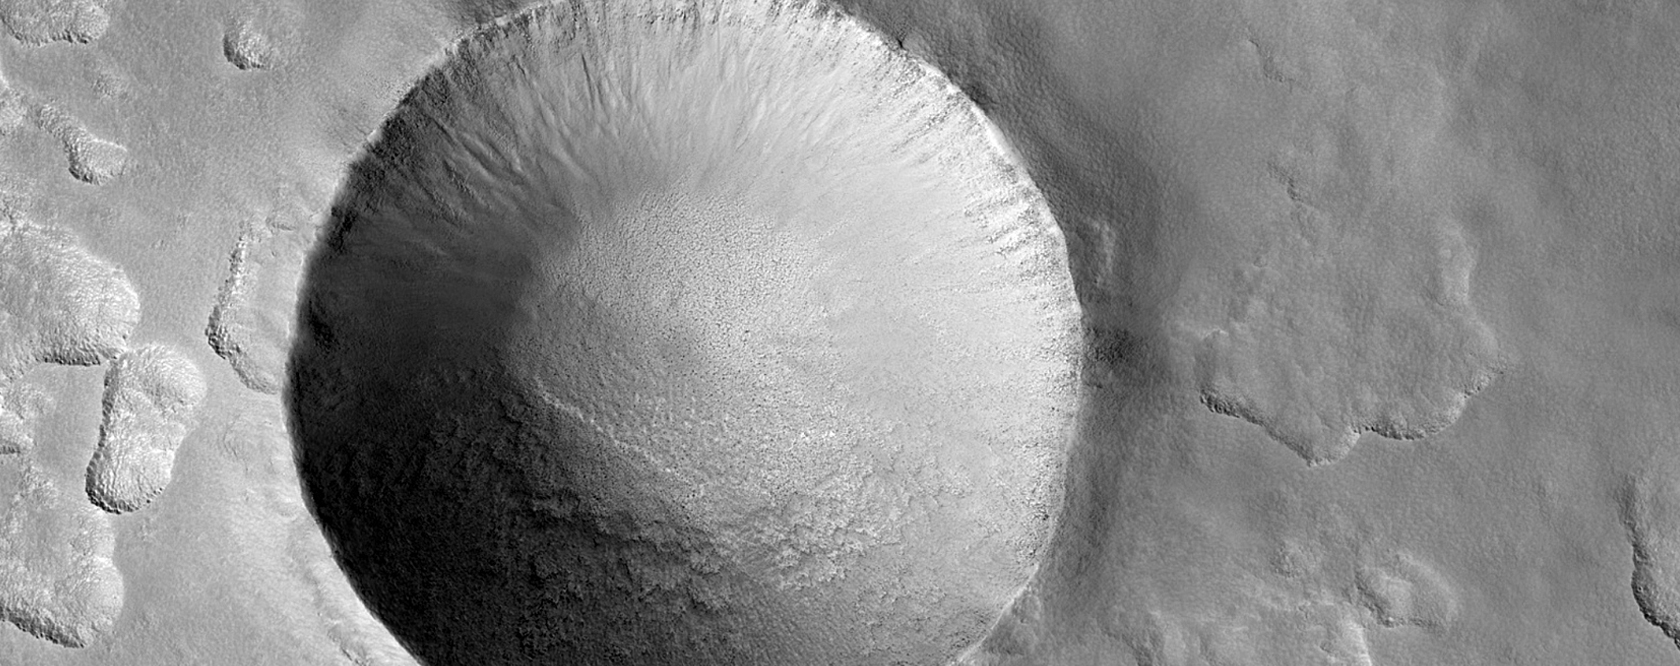 Un bonito cráter de impacto